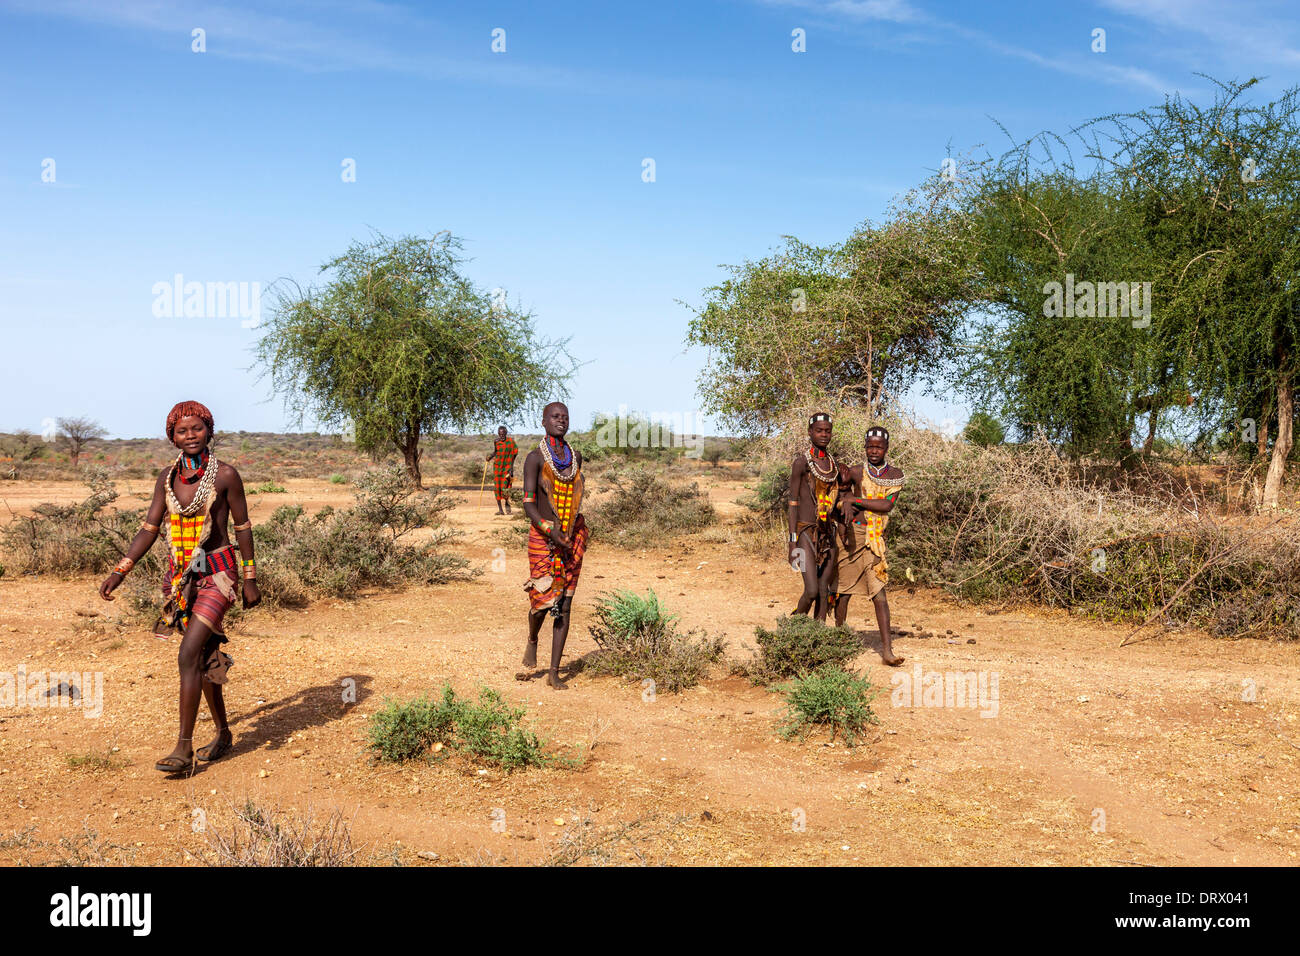 Les jeunes femmes de la tribu Hamer Hamer, village près de Turmi, vallée de l'Omo, Ethiopie Banque D'Images